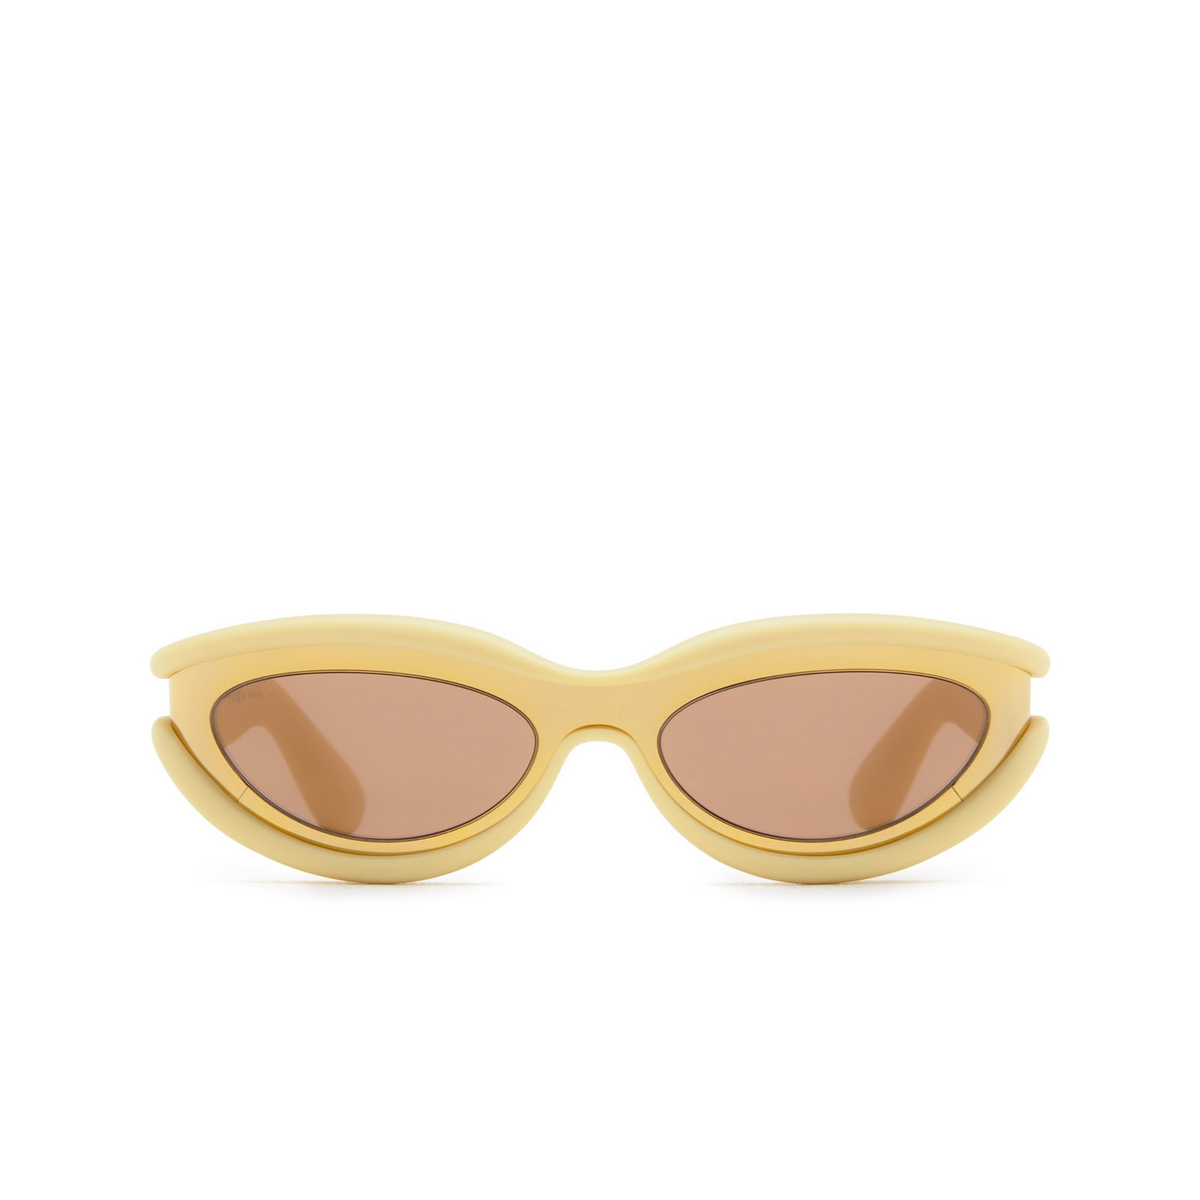 Bottega Veneta Hem Sunglasses 005 Gold - front view